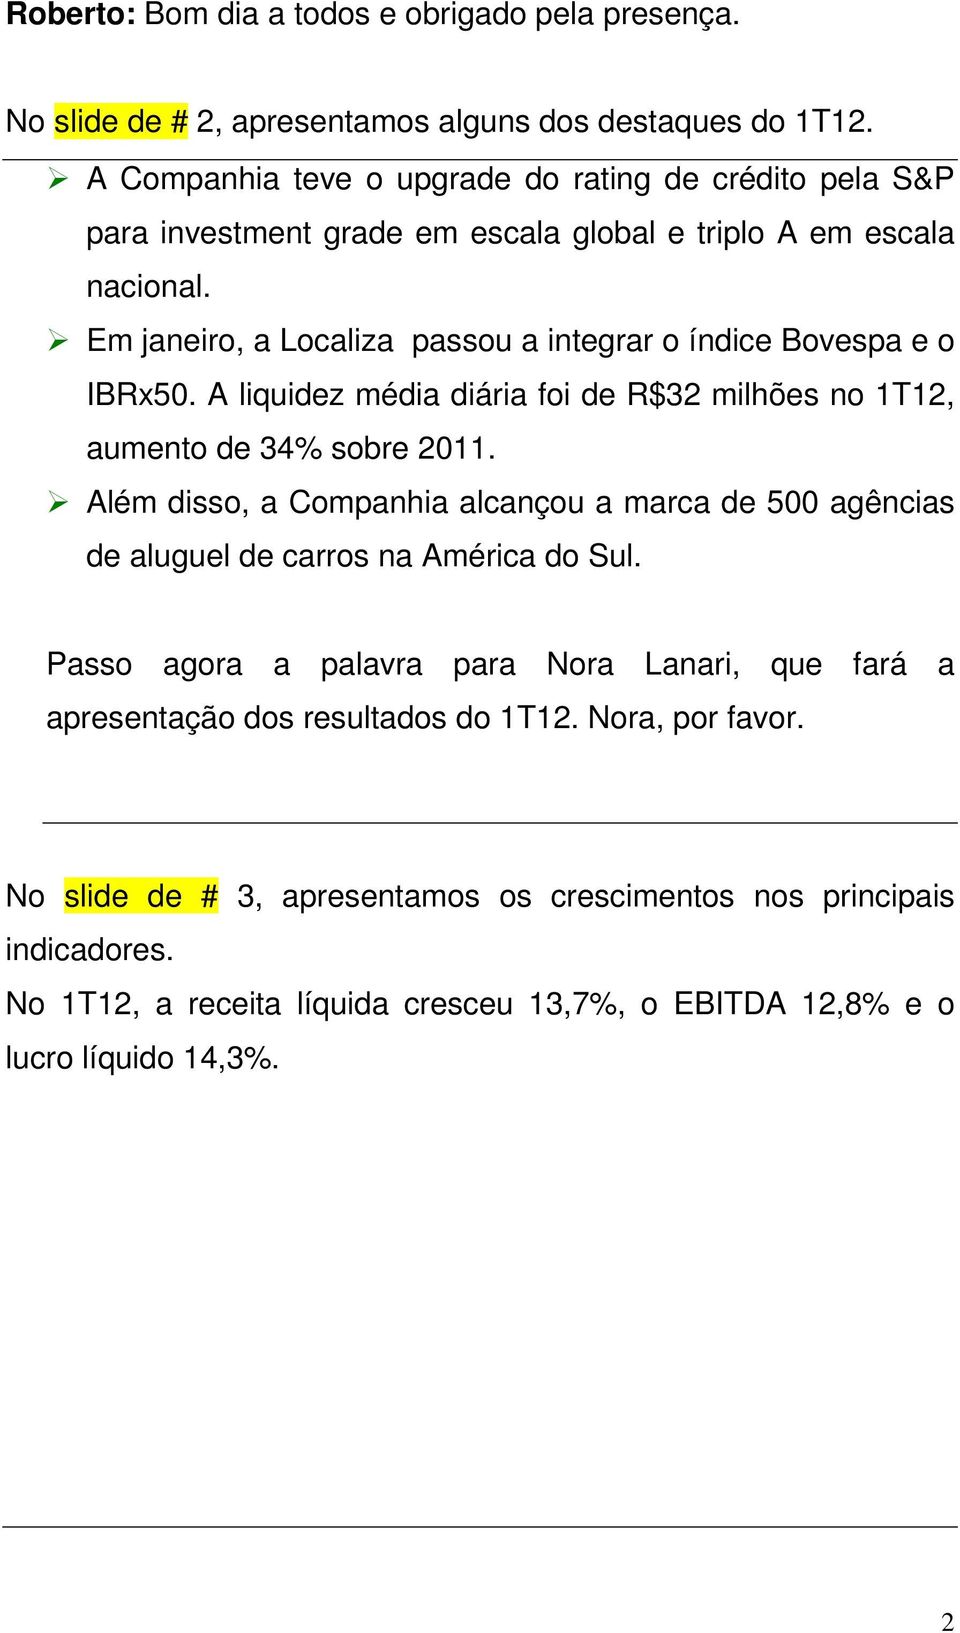 Em janeiro, a Localiza passou a integrar o índice Bovespa e o IBRx50. A liquidez média diária foi de R$32 milhões no 1T12, aumento de 34% sobre 2011.